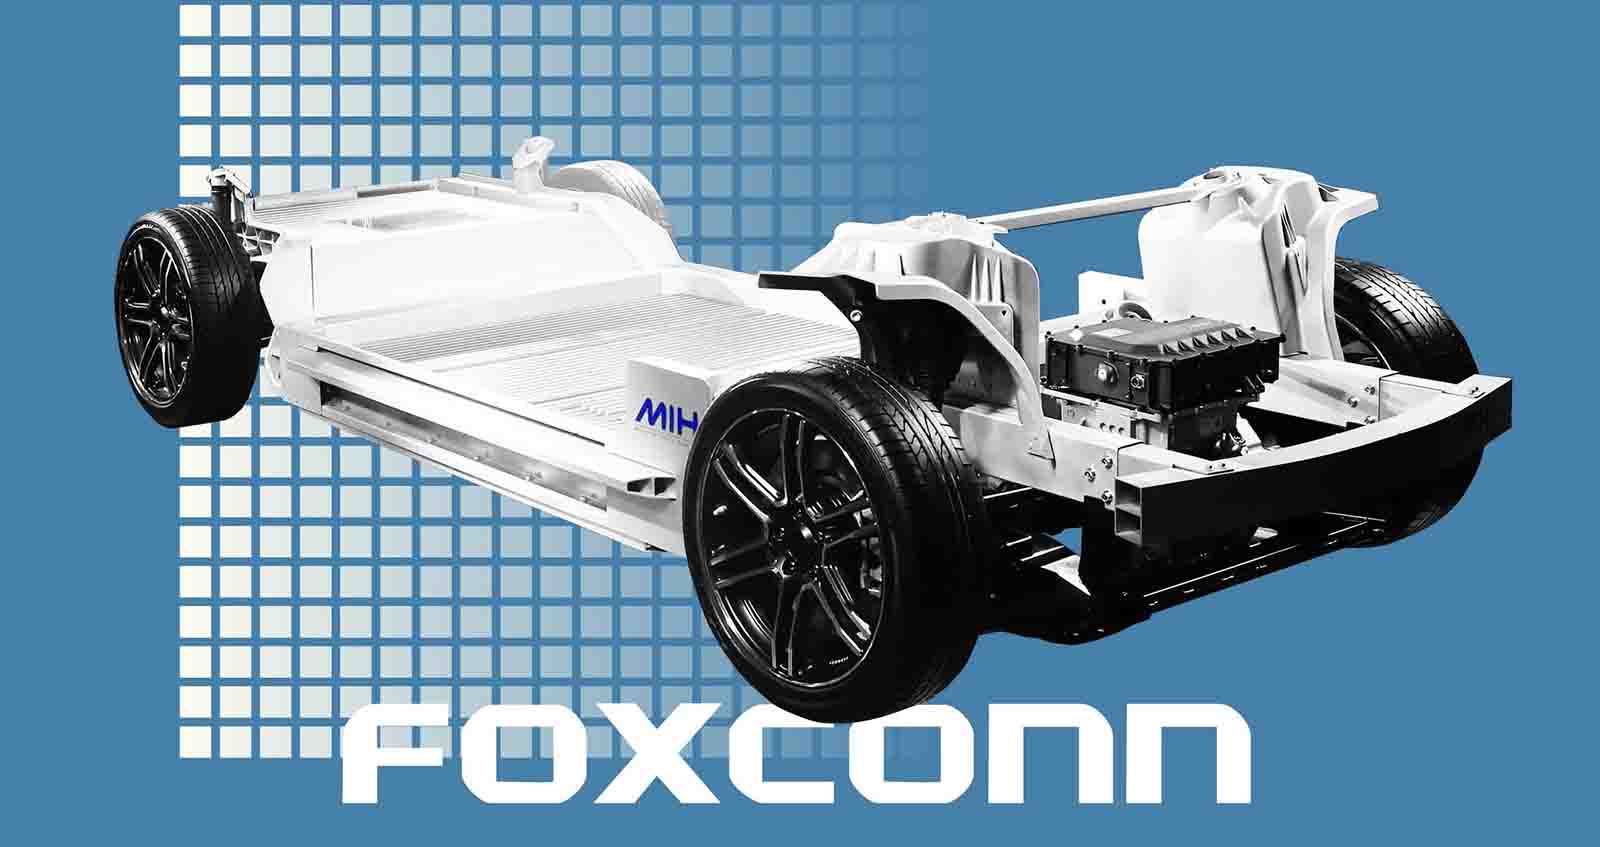 ปตท. เตรียมโชว์แพลตฟอร์มรถยนต์ไฟฟ้า ในงาน มอเตอร์โชว์ 2022 ก่อนลุยผลิต EV ปี 2567 ร่วม Foxconn และ HORIZON PLUS